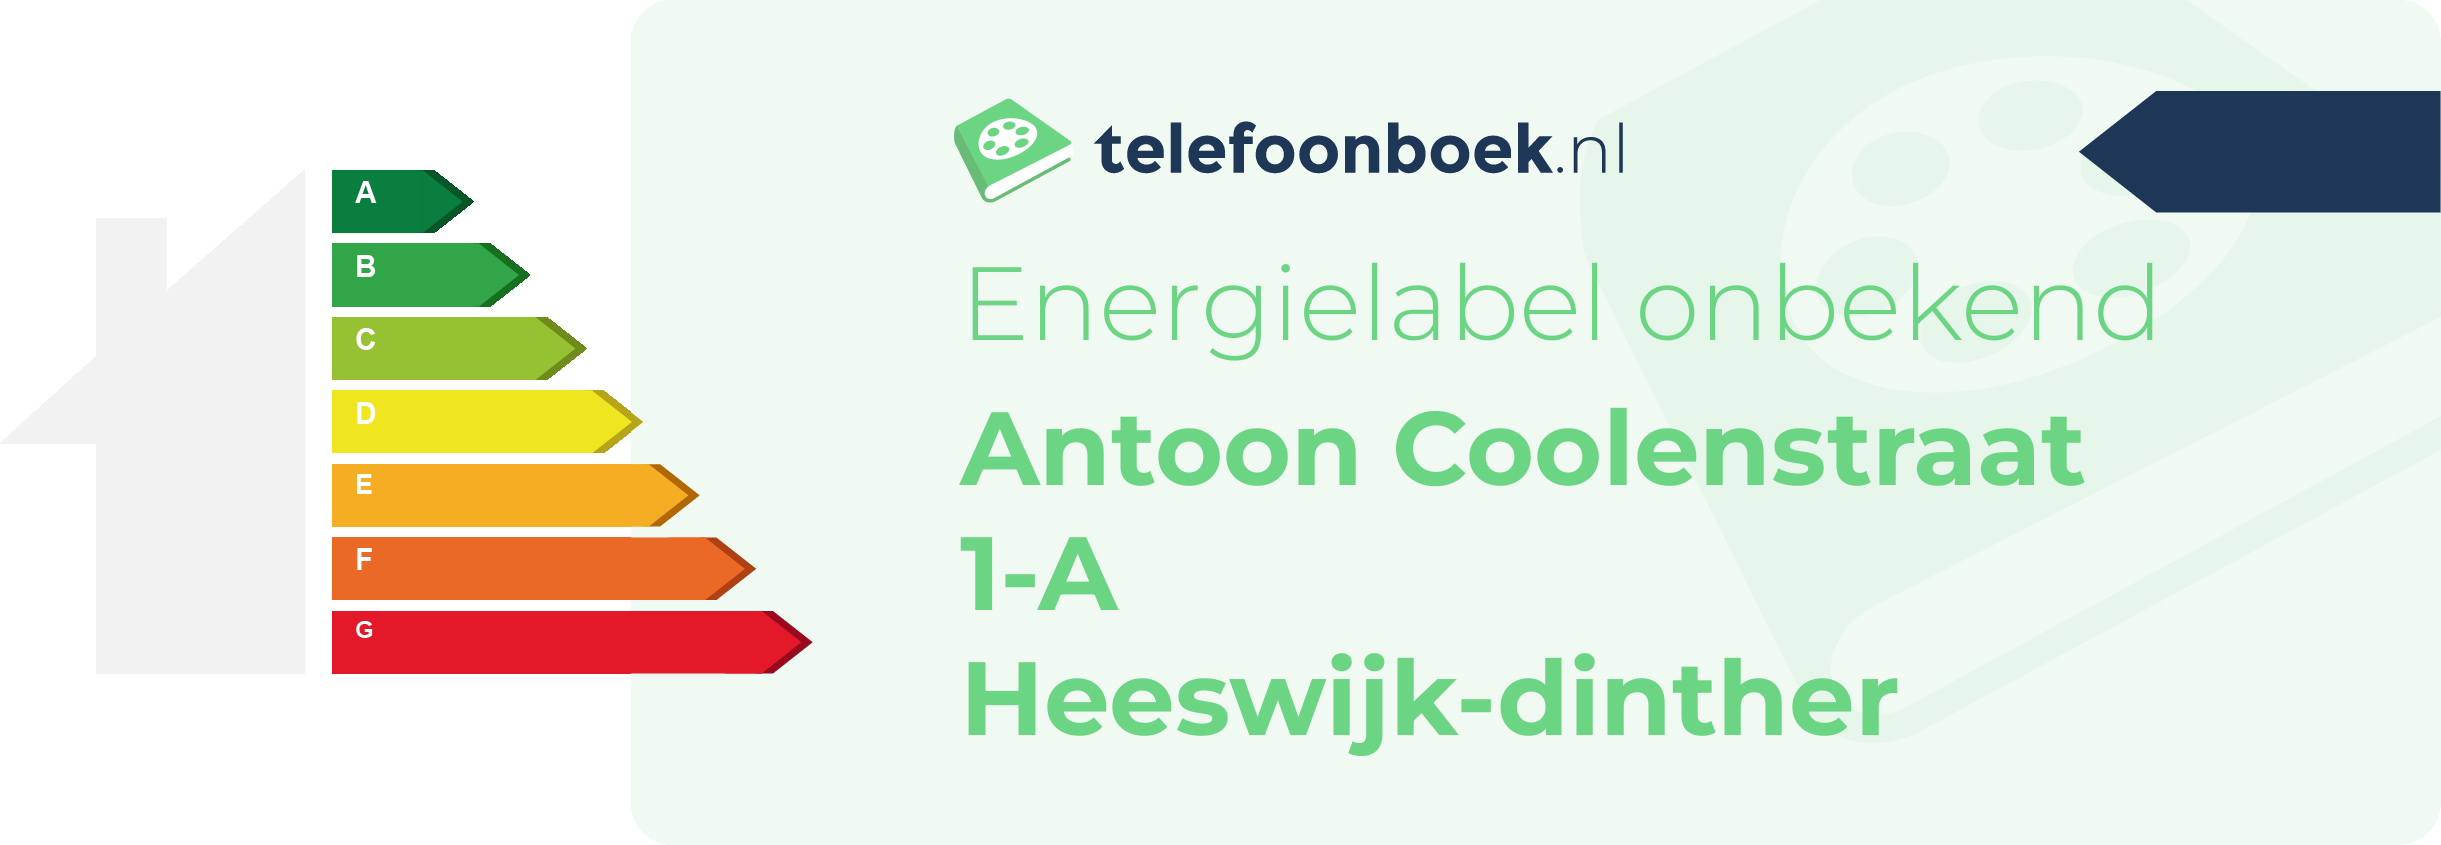 Energielabel Antoon Coolenstraat 1-A Heeswijk-Dinther